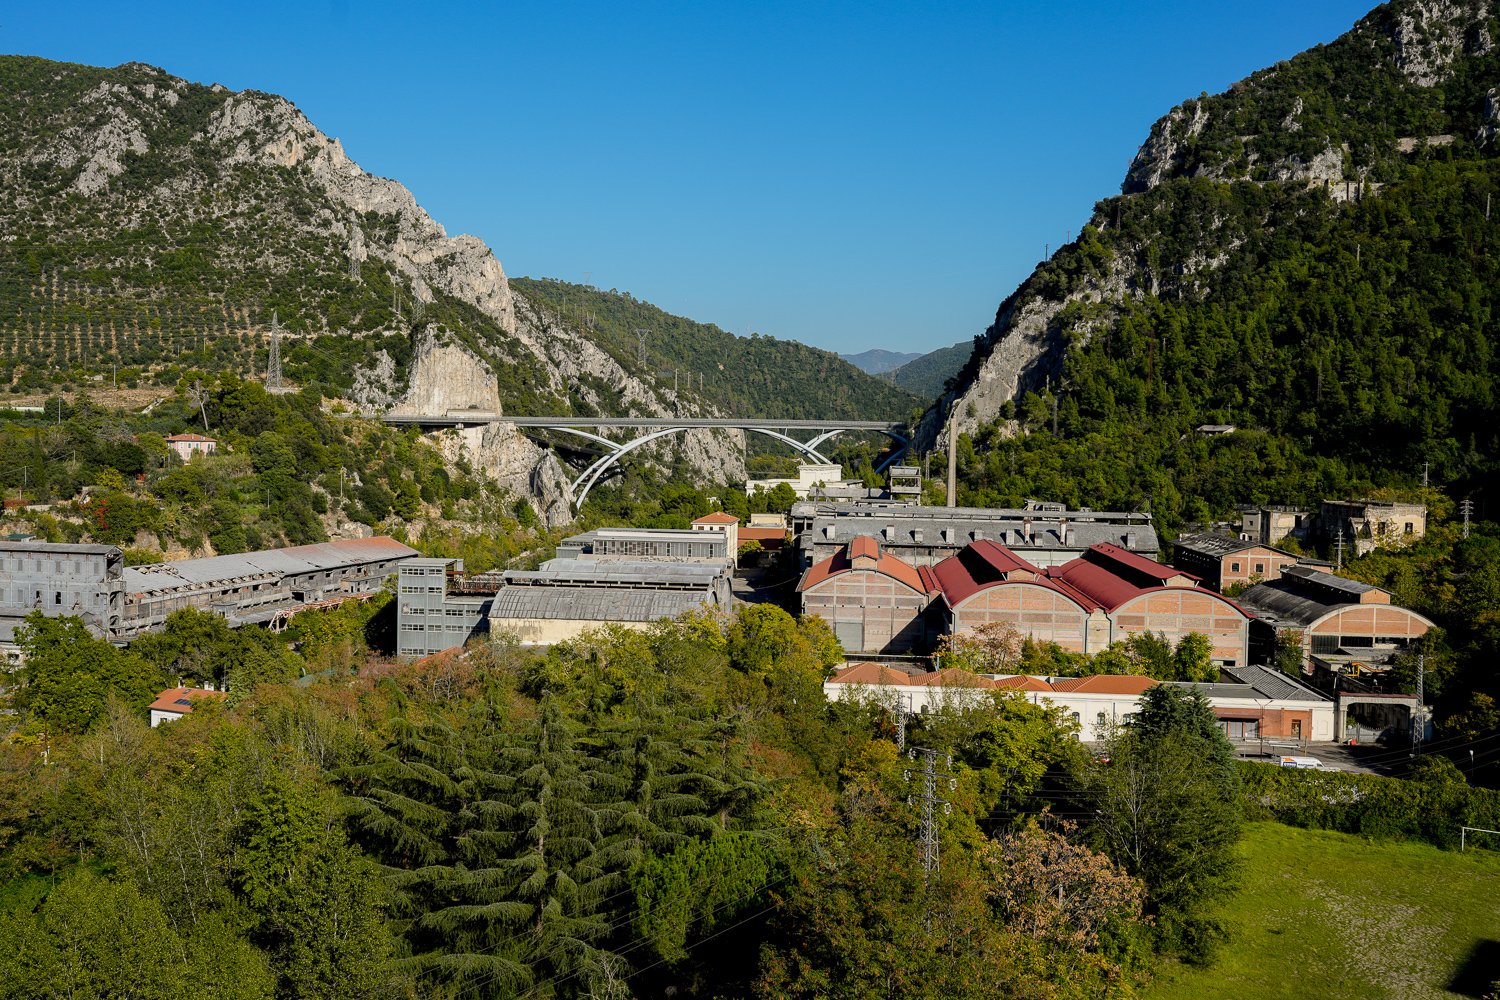  Veduta della fabbrica dal borgo di Papigno, della cava e delle condutture per la Centrale di Papigno.Papigno (Terni), 2022 